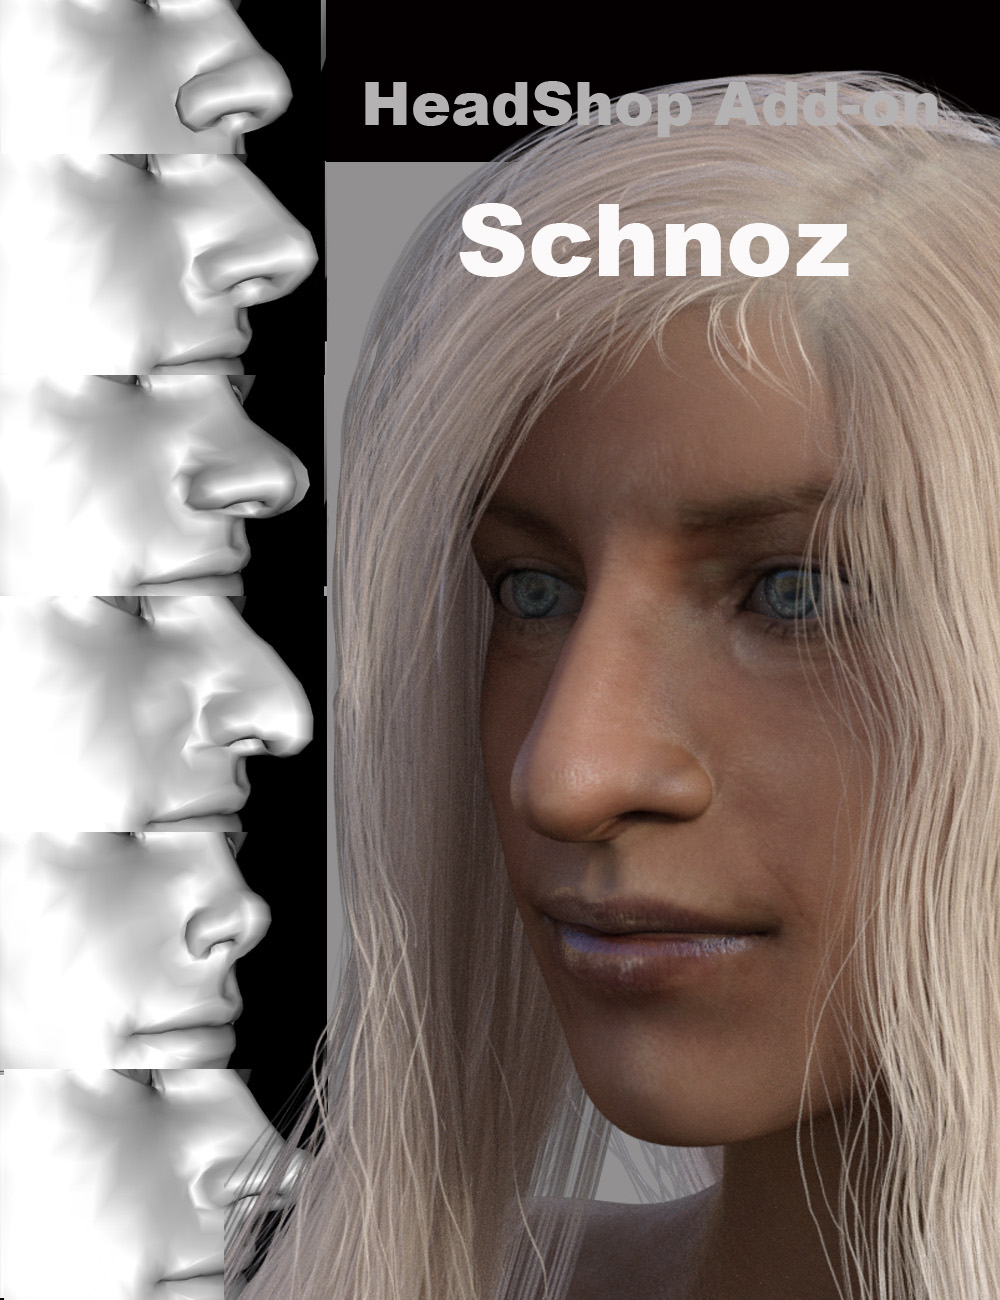 HeadShop - Schnoz Add-On by: Abalone LLC, 3D Models by Daz 3D